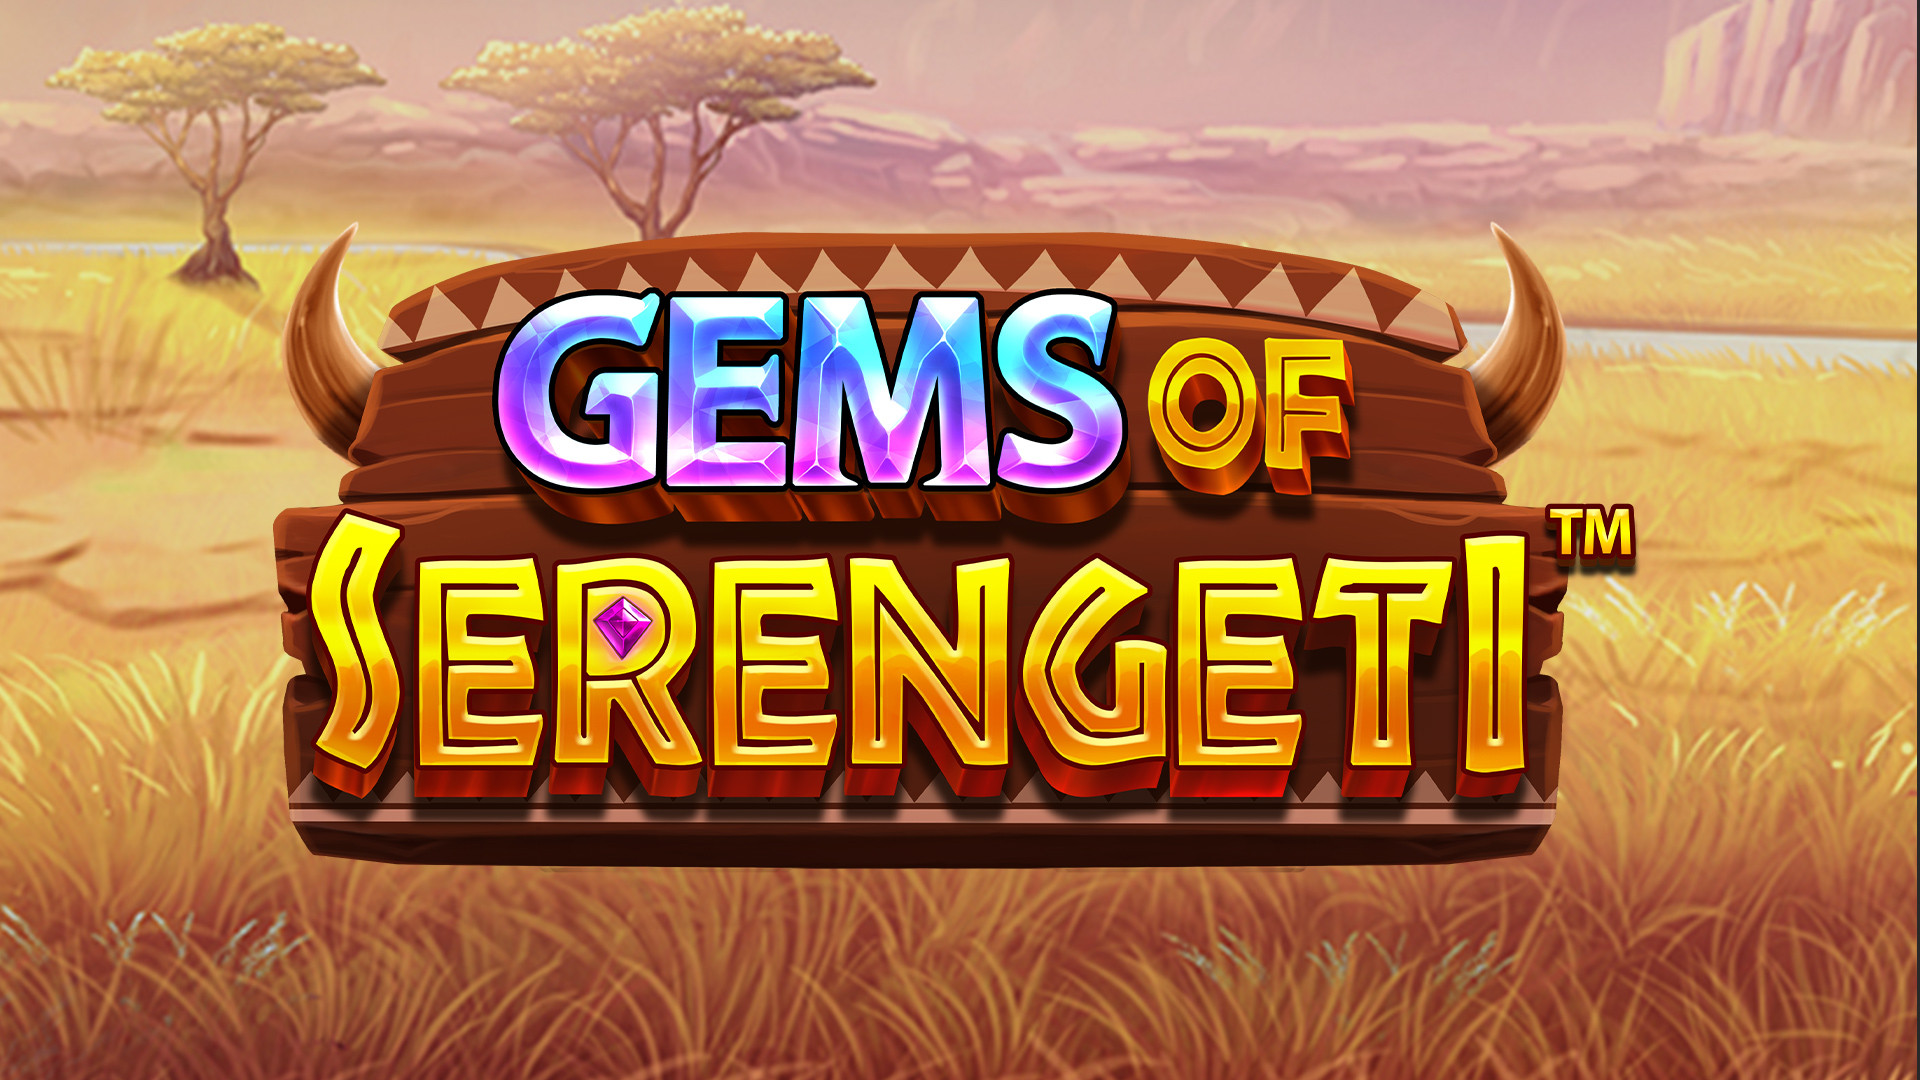 Gems of Serengeti